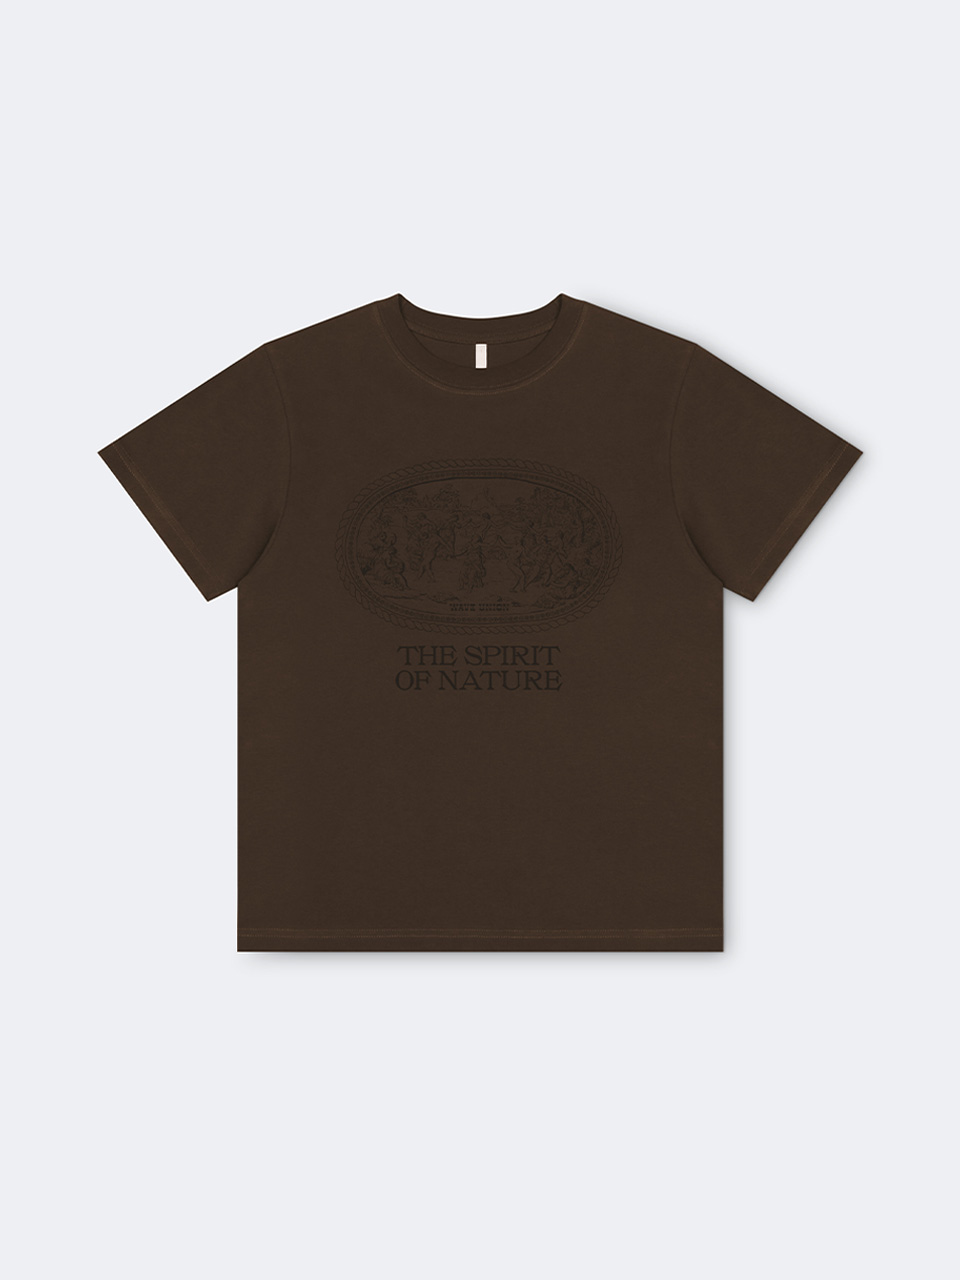 Nymphs T-shirt brown[예약배송 05월29일]